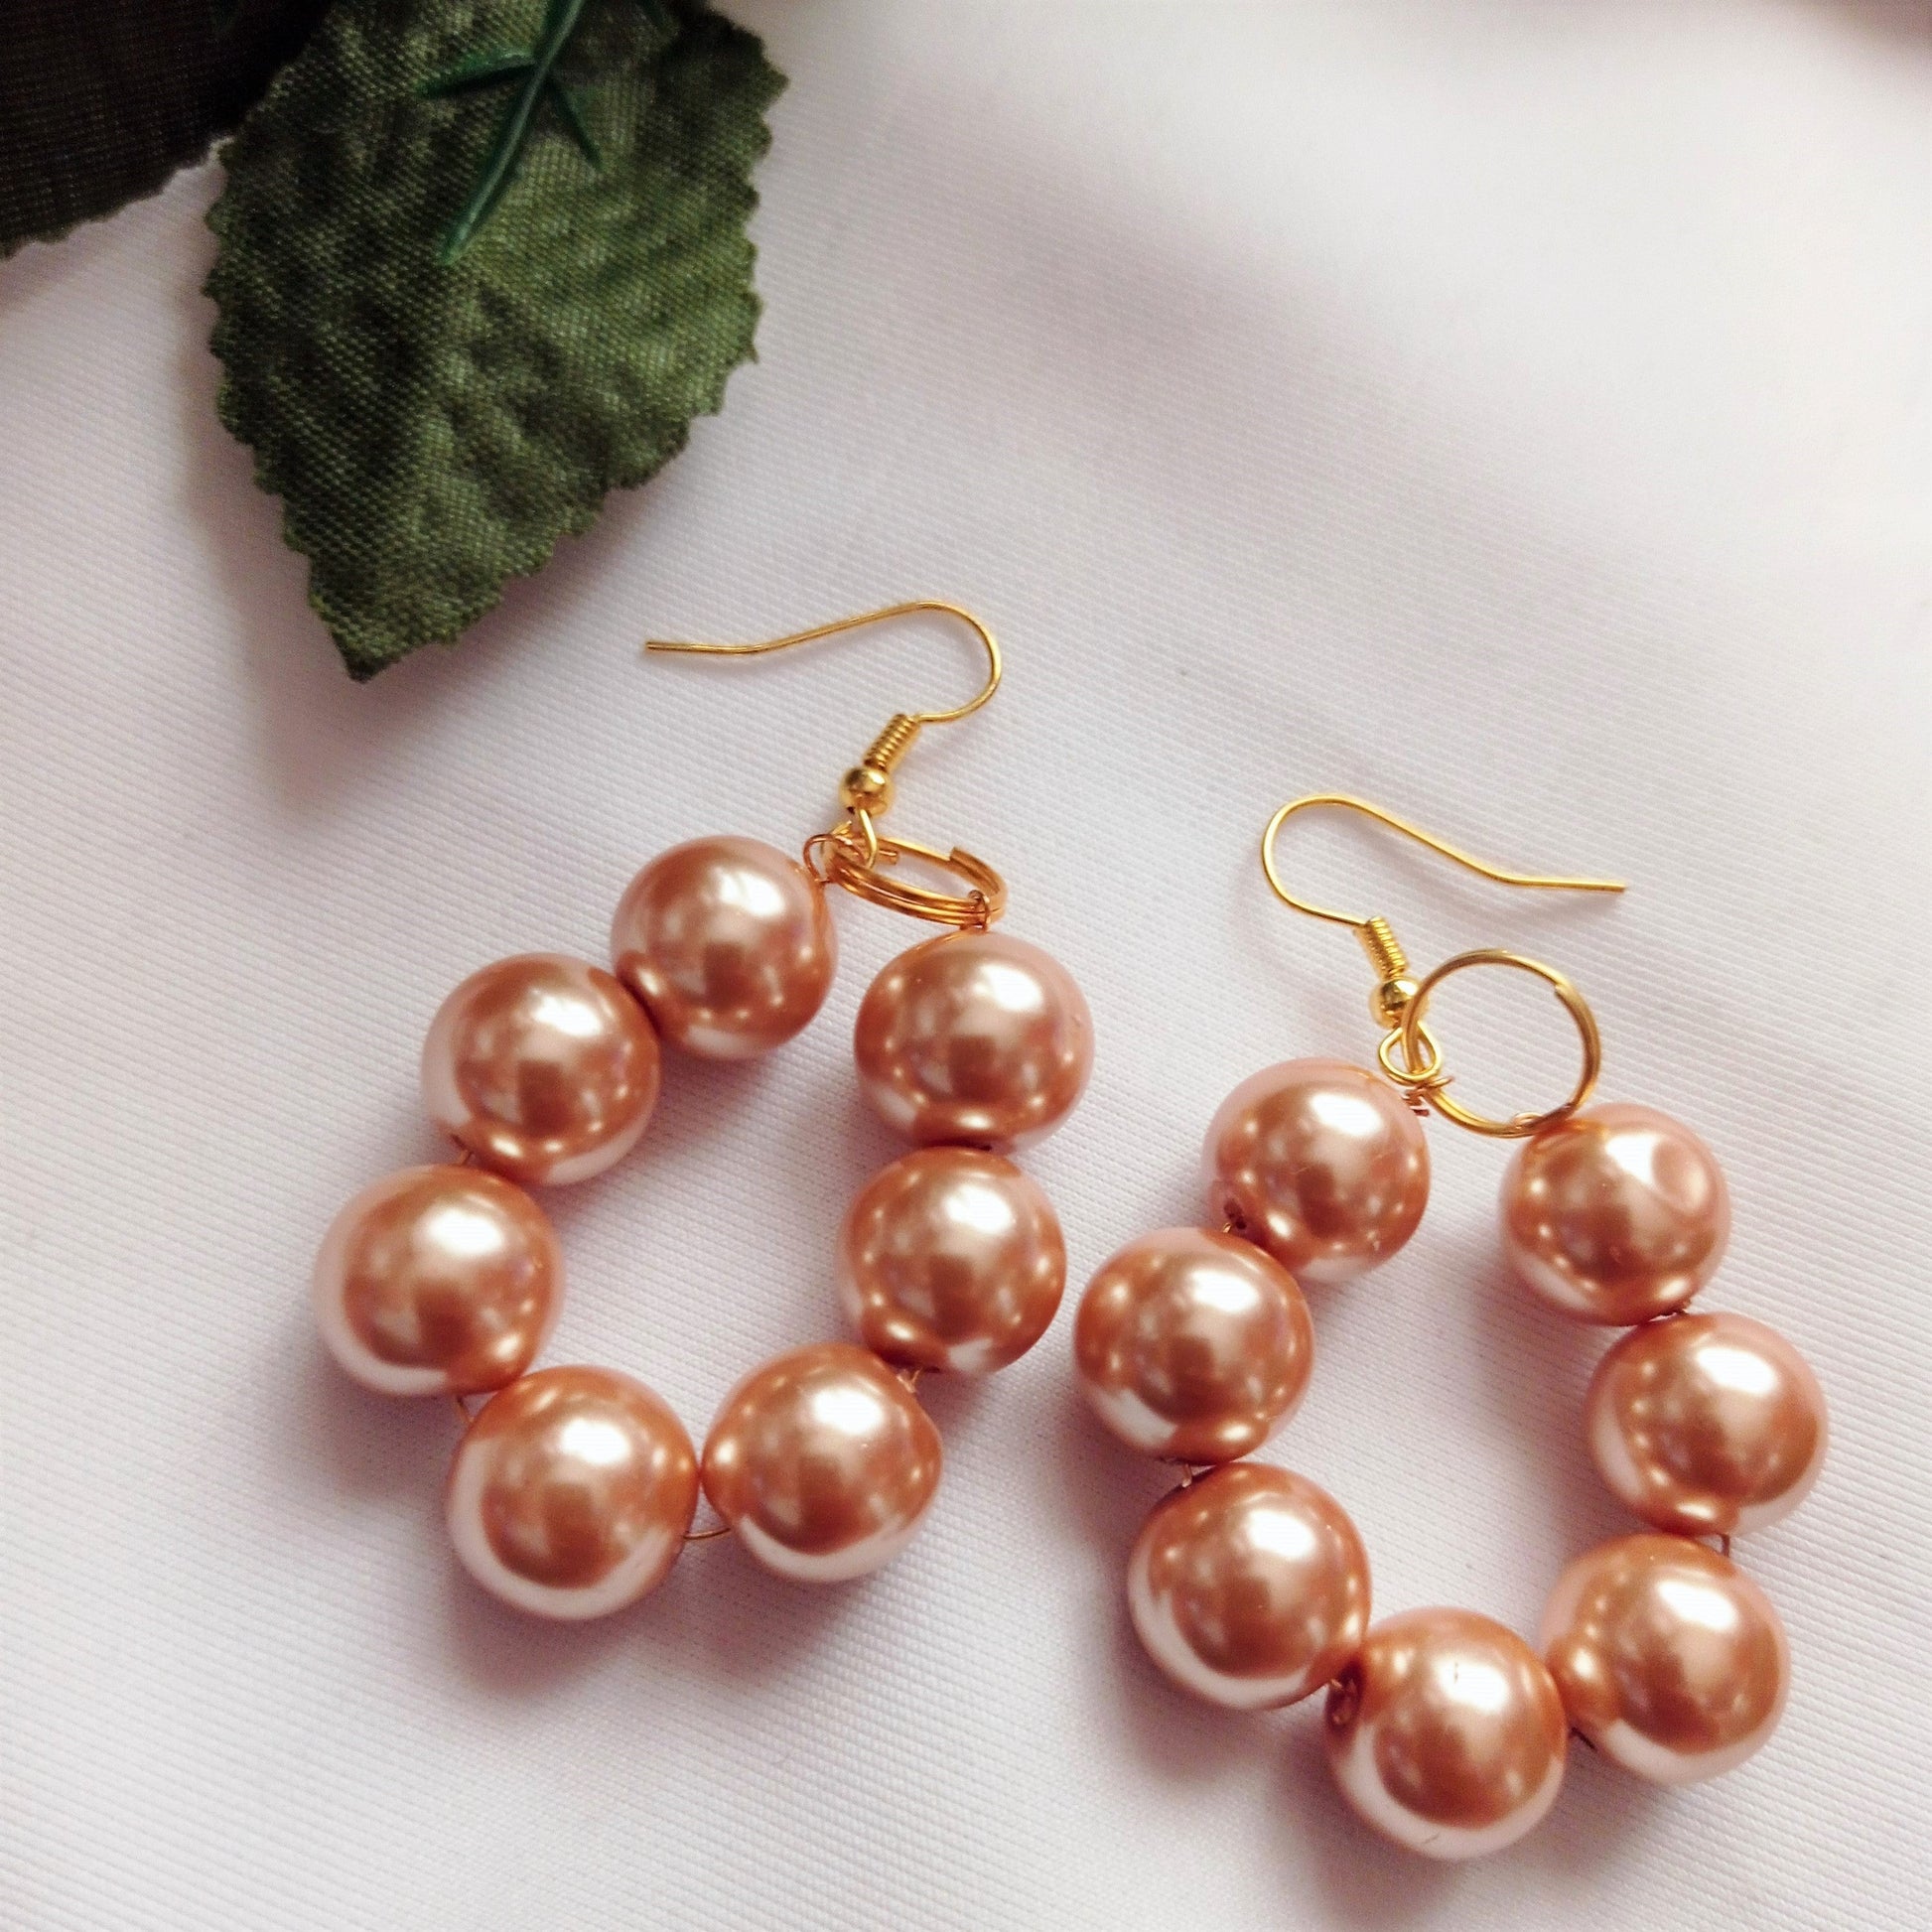 Bronze Glass Pearl Earrings, Glass Pearl Jewelry, Unique Earrings | by lovedbynlanla-3